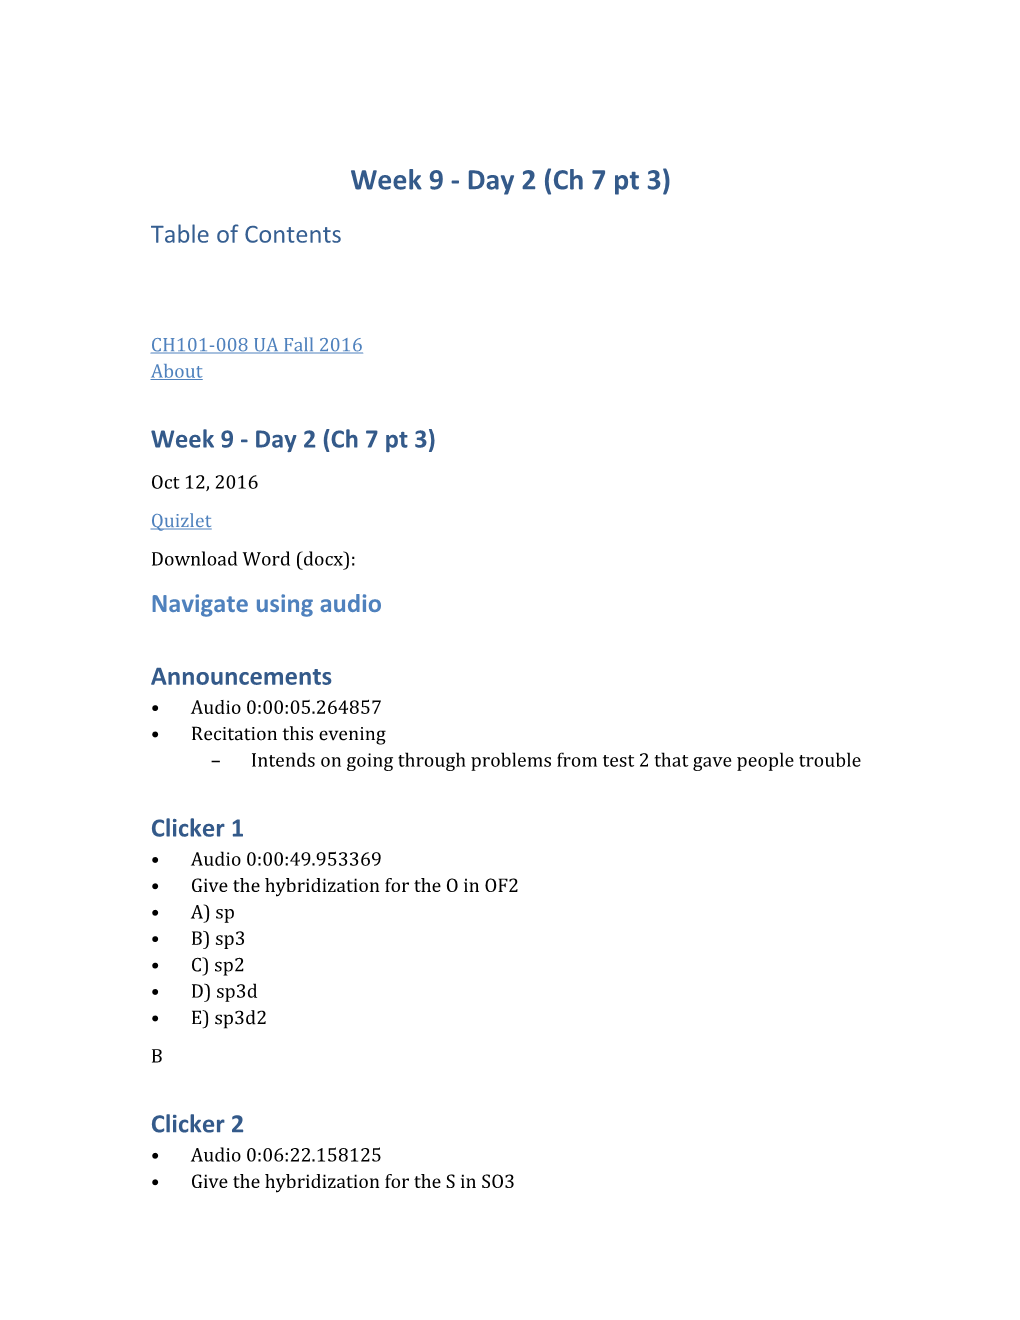 Week 9 - Day 2 (Ch 7 Pt 3)